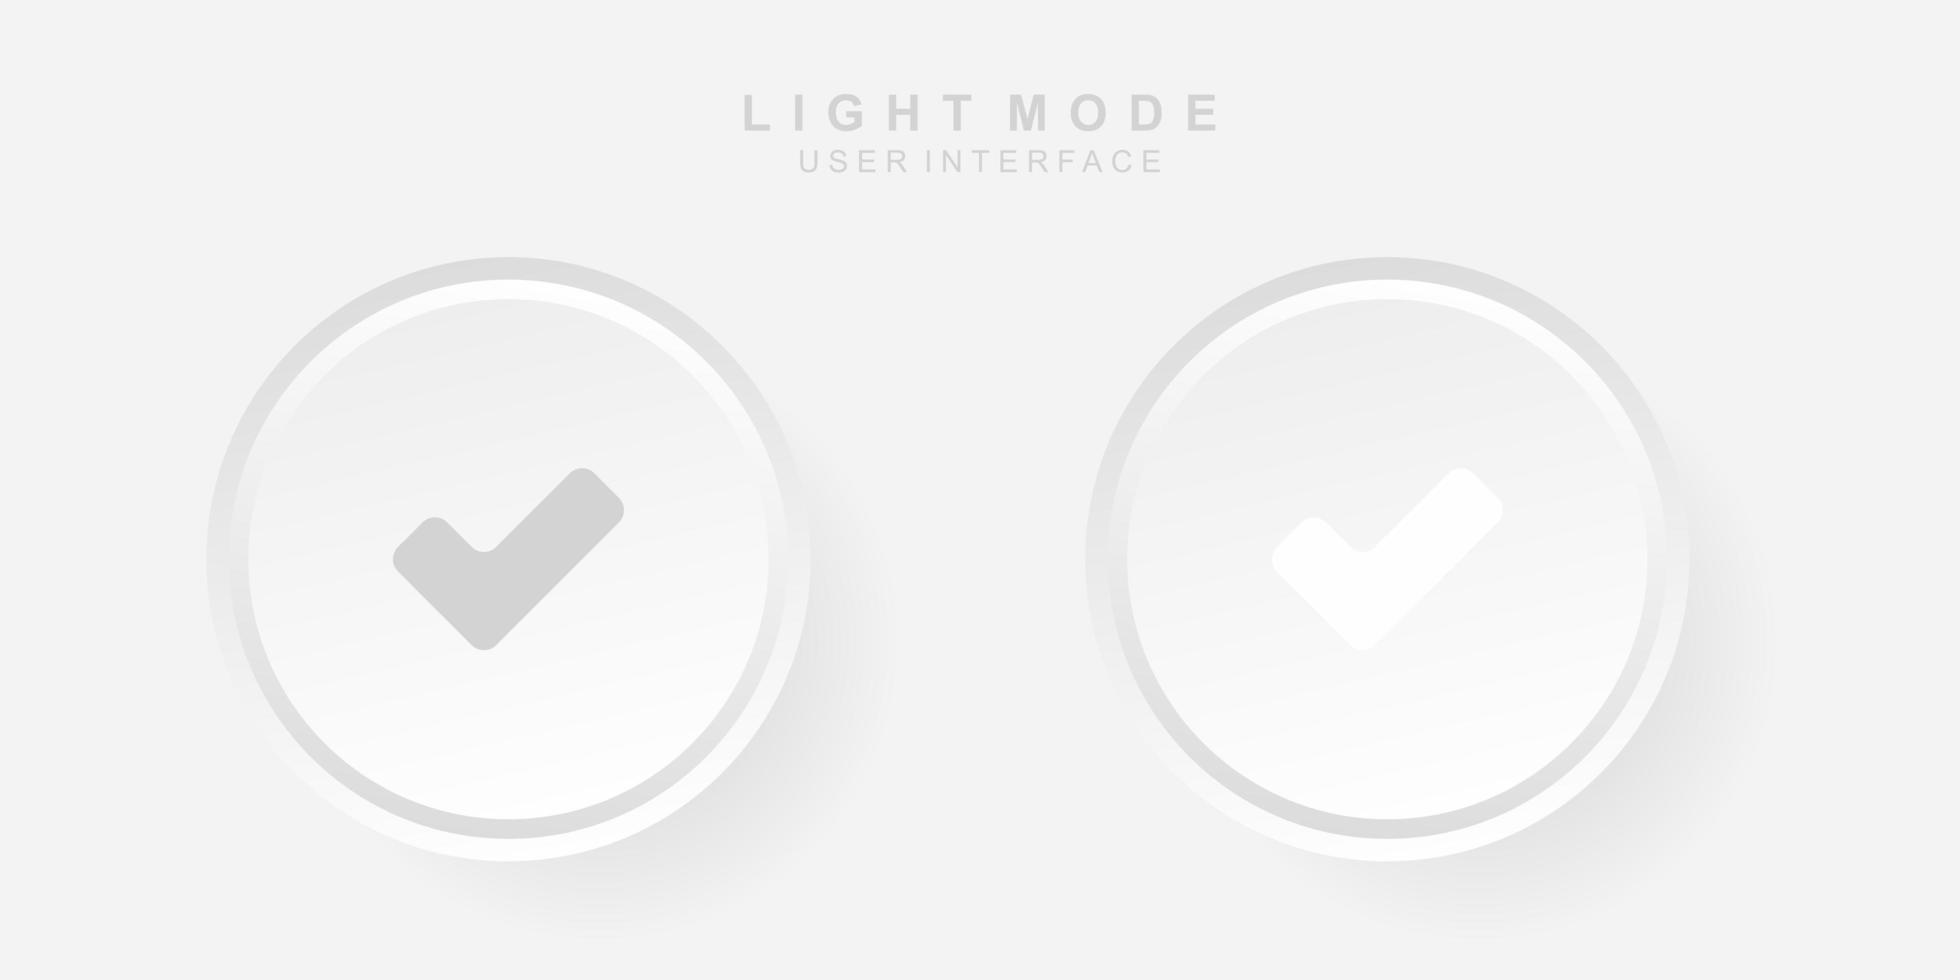 enkelt kreativt korrekt användargränssnitt i neumorfism design enkel modern och minimalistisk. vektor